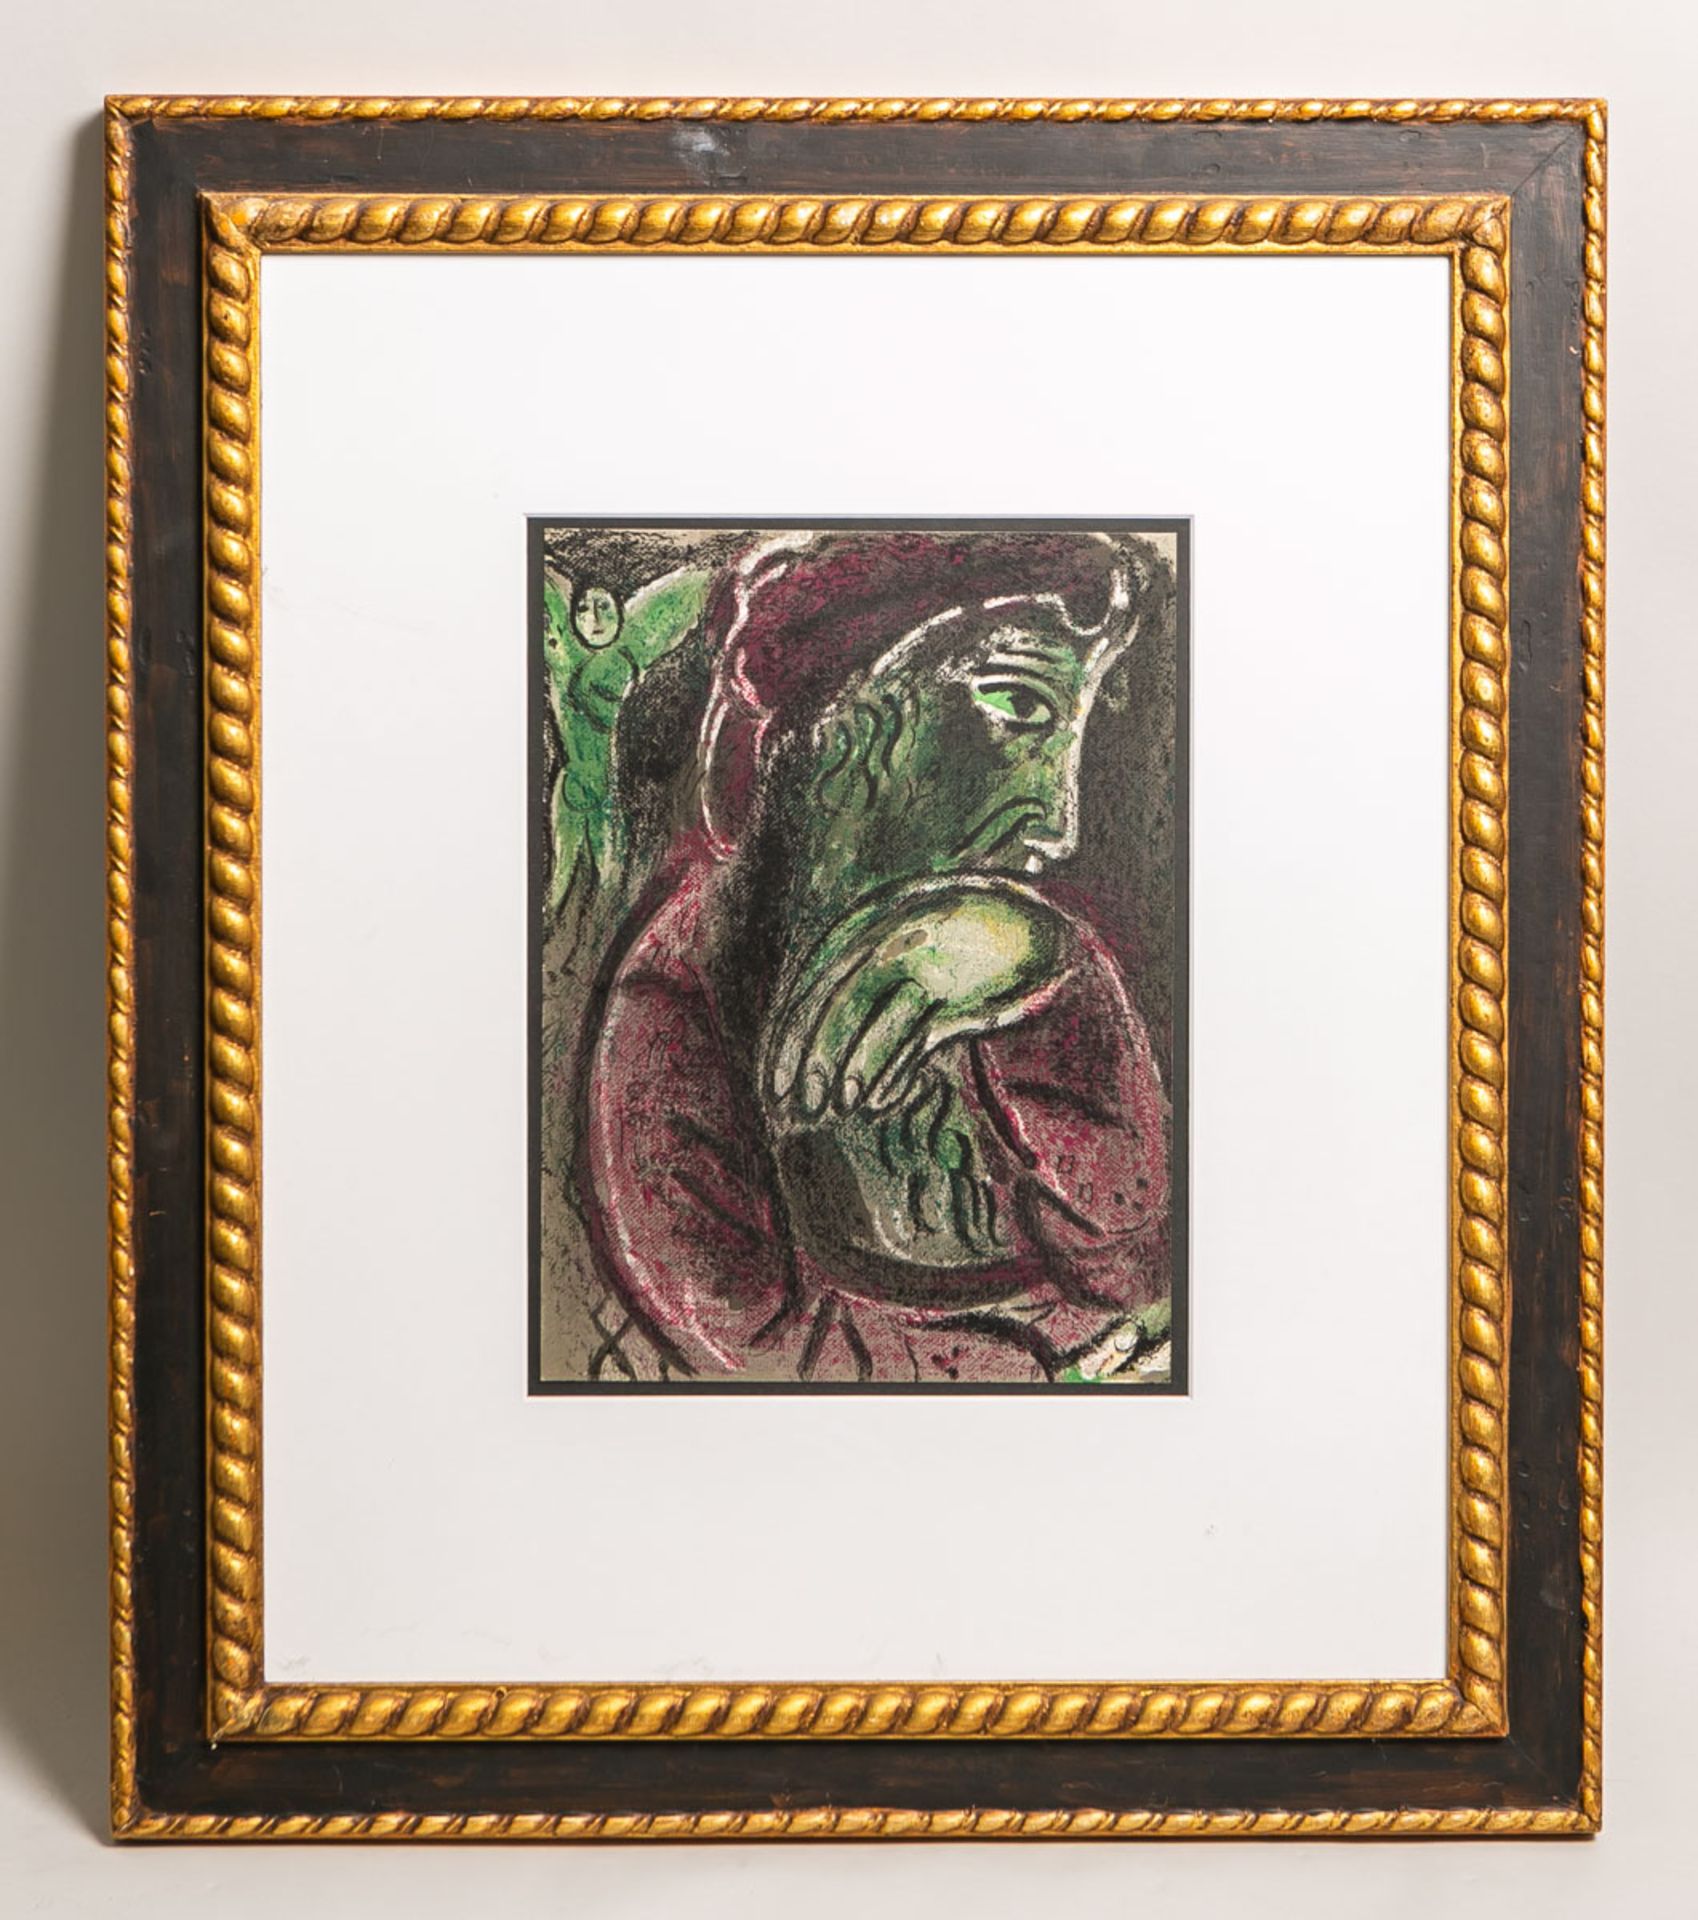 Chagall, Marc (1887 - 1985), Hiob in der Verzweiflung (1960)